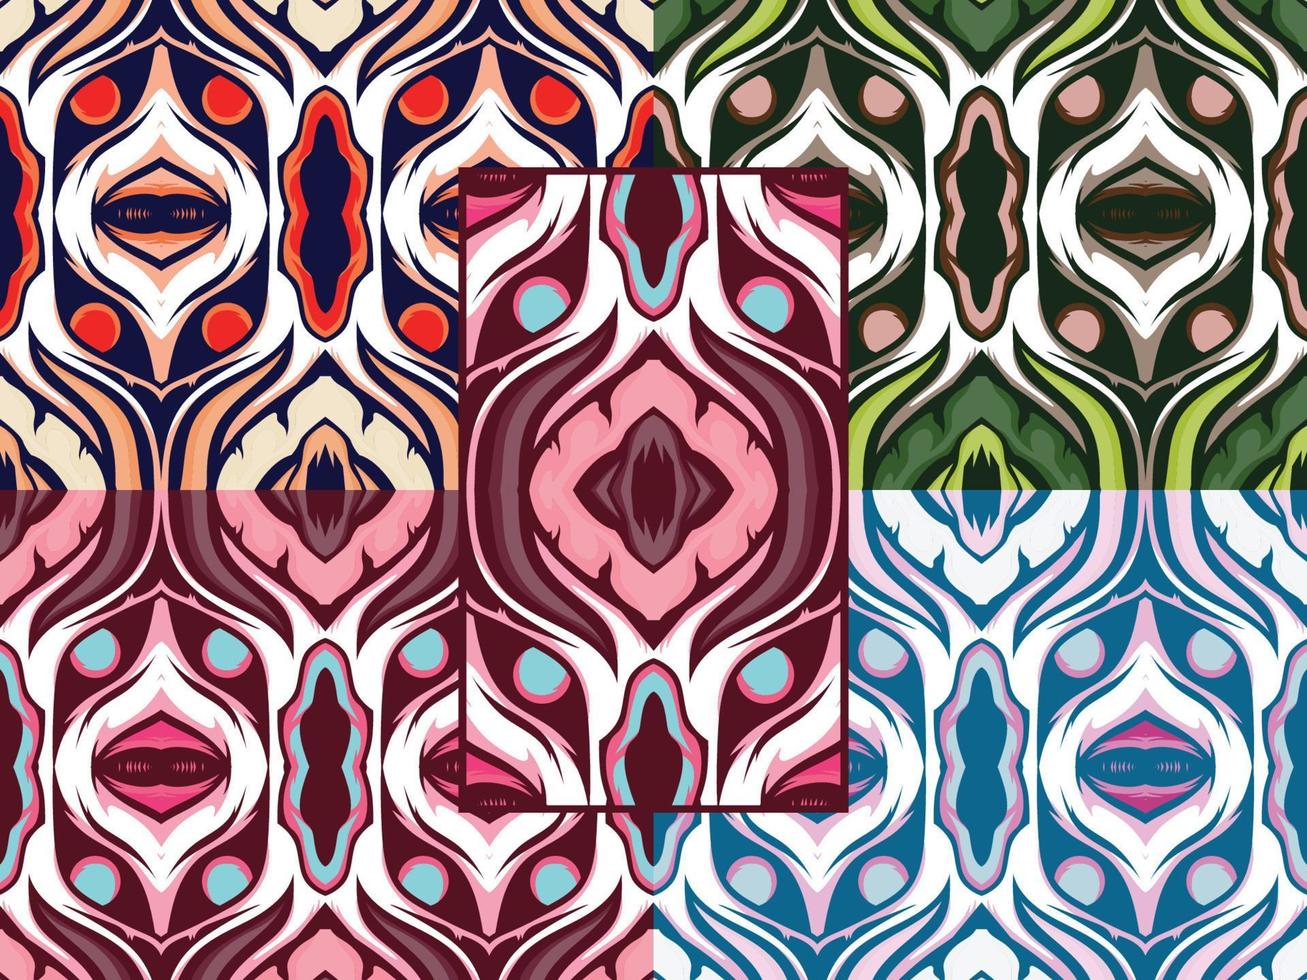 dekorativa dekorativa mönster färgkombination vektor